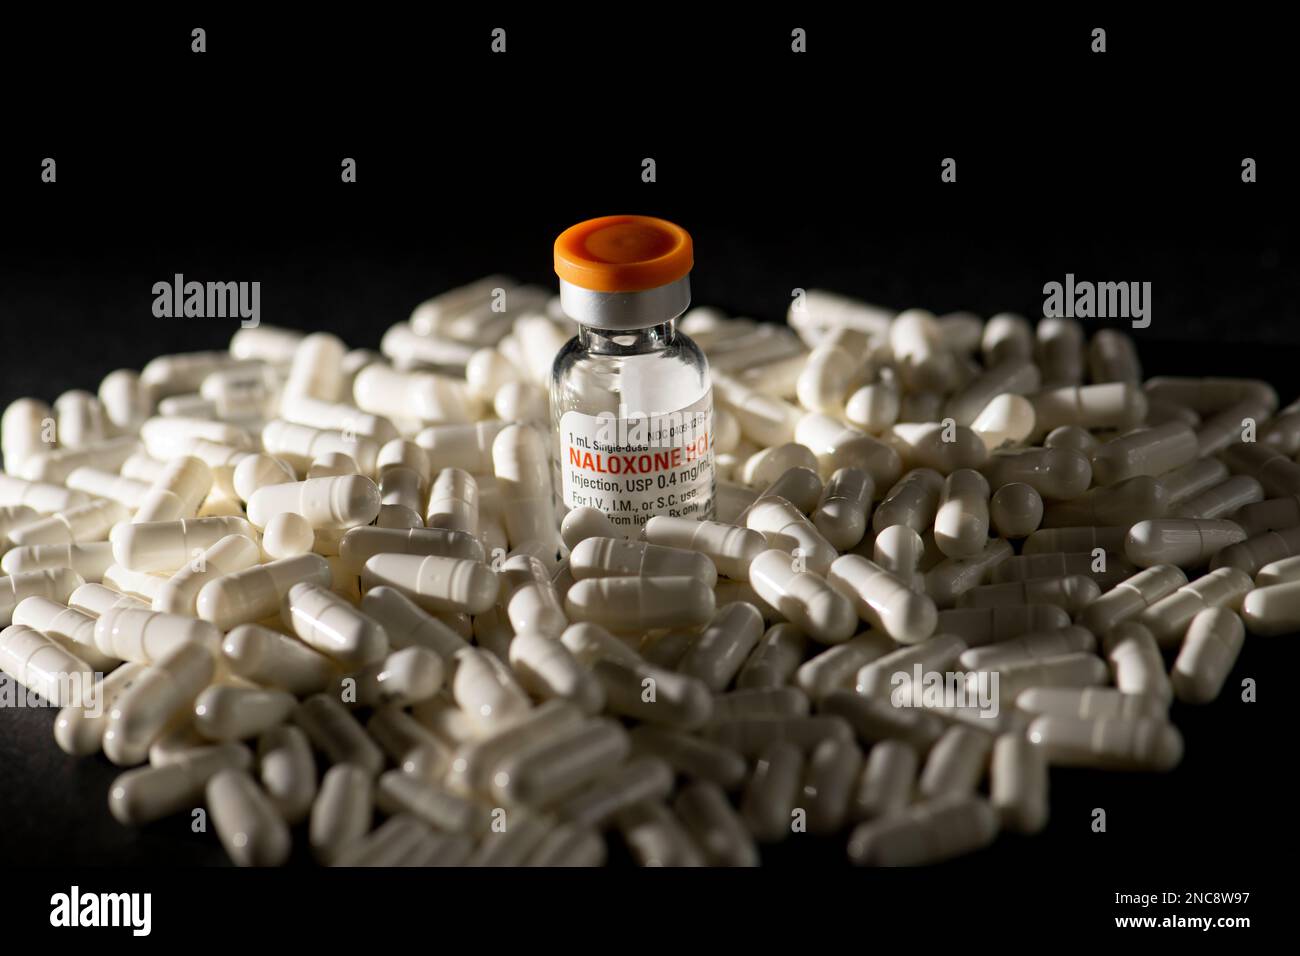 Una bottiglia di naloxone su un mucchio di pillole su sfondo nero. Naloxone è un farmaco salvavita che può invertire un sovradosaggio da oppioidi. Foto Stock